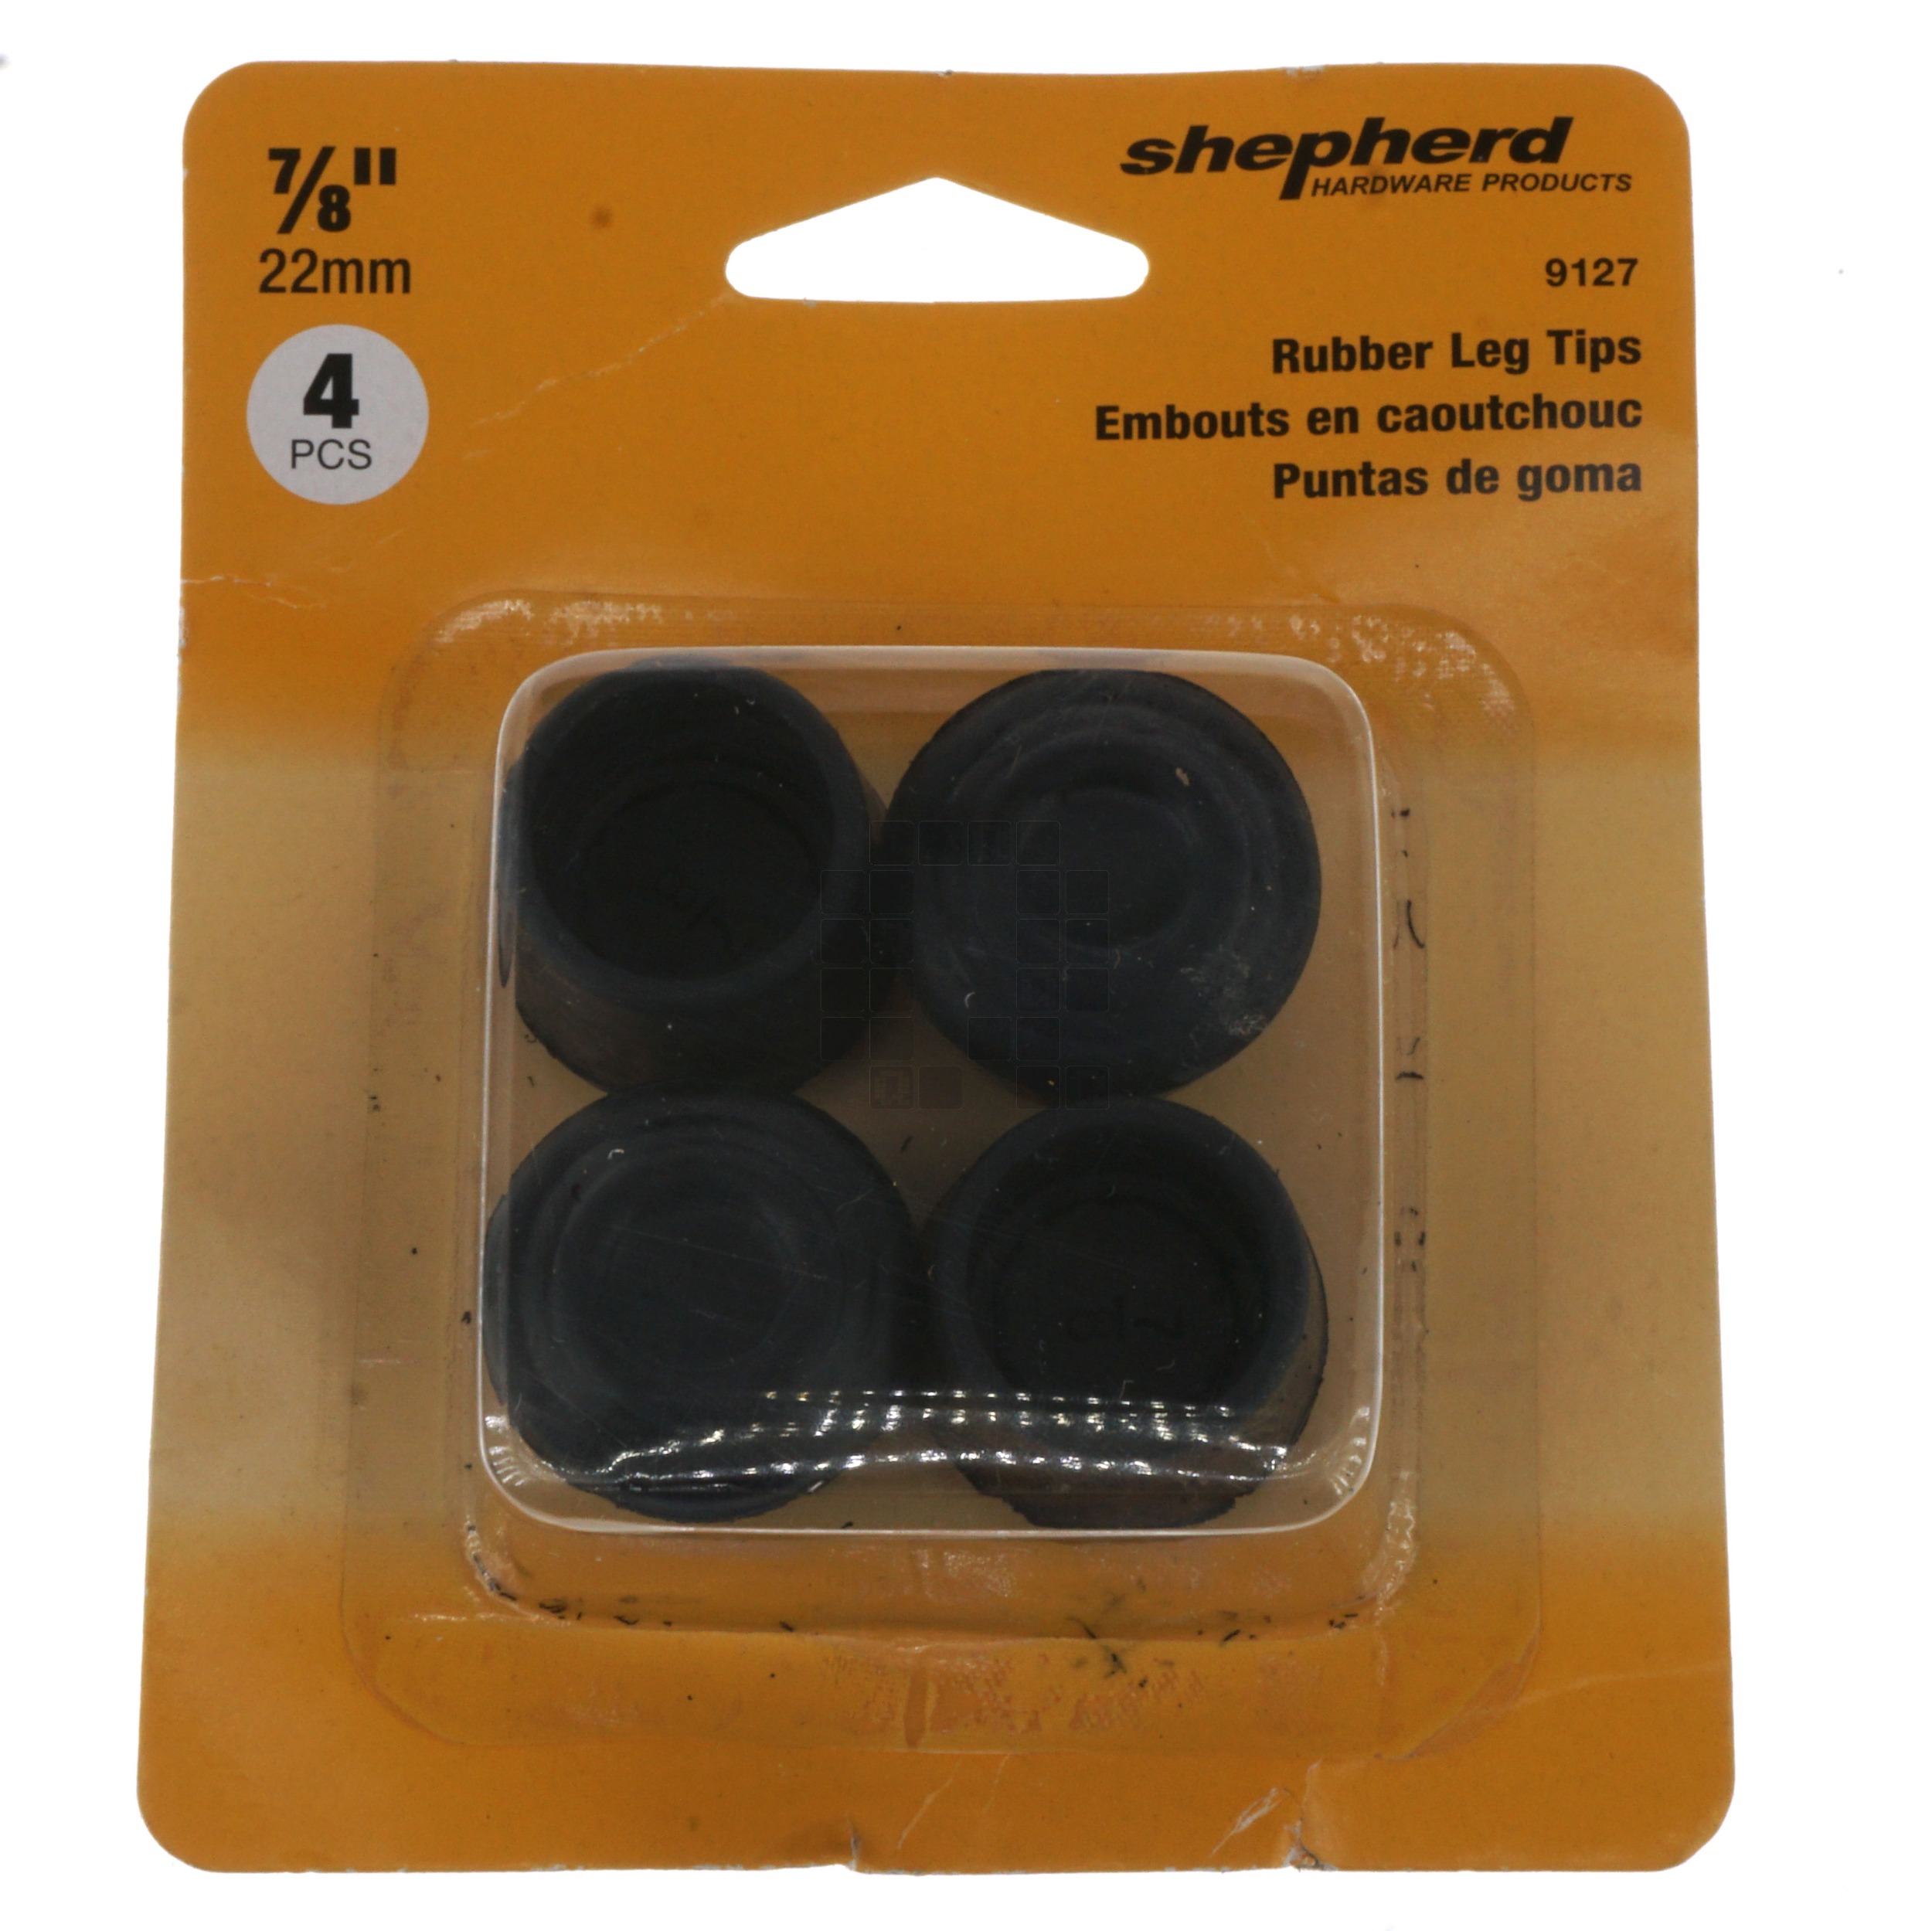 Shepherd 9127 Black Rubber Leg Tips, 4 Pack, 7/8" or 22mm